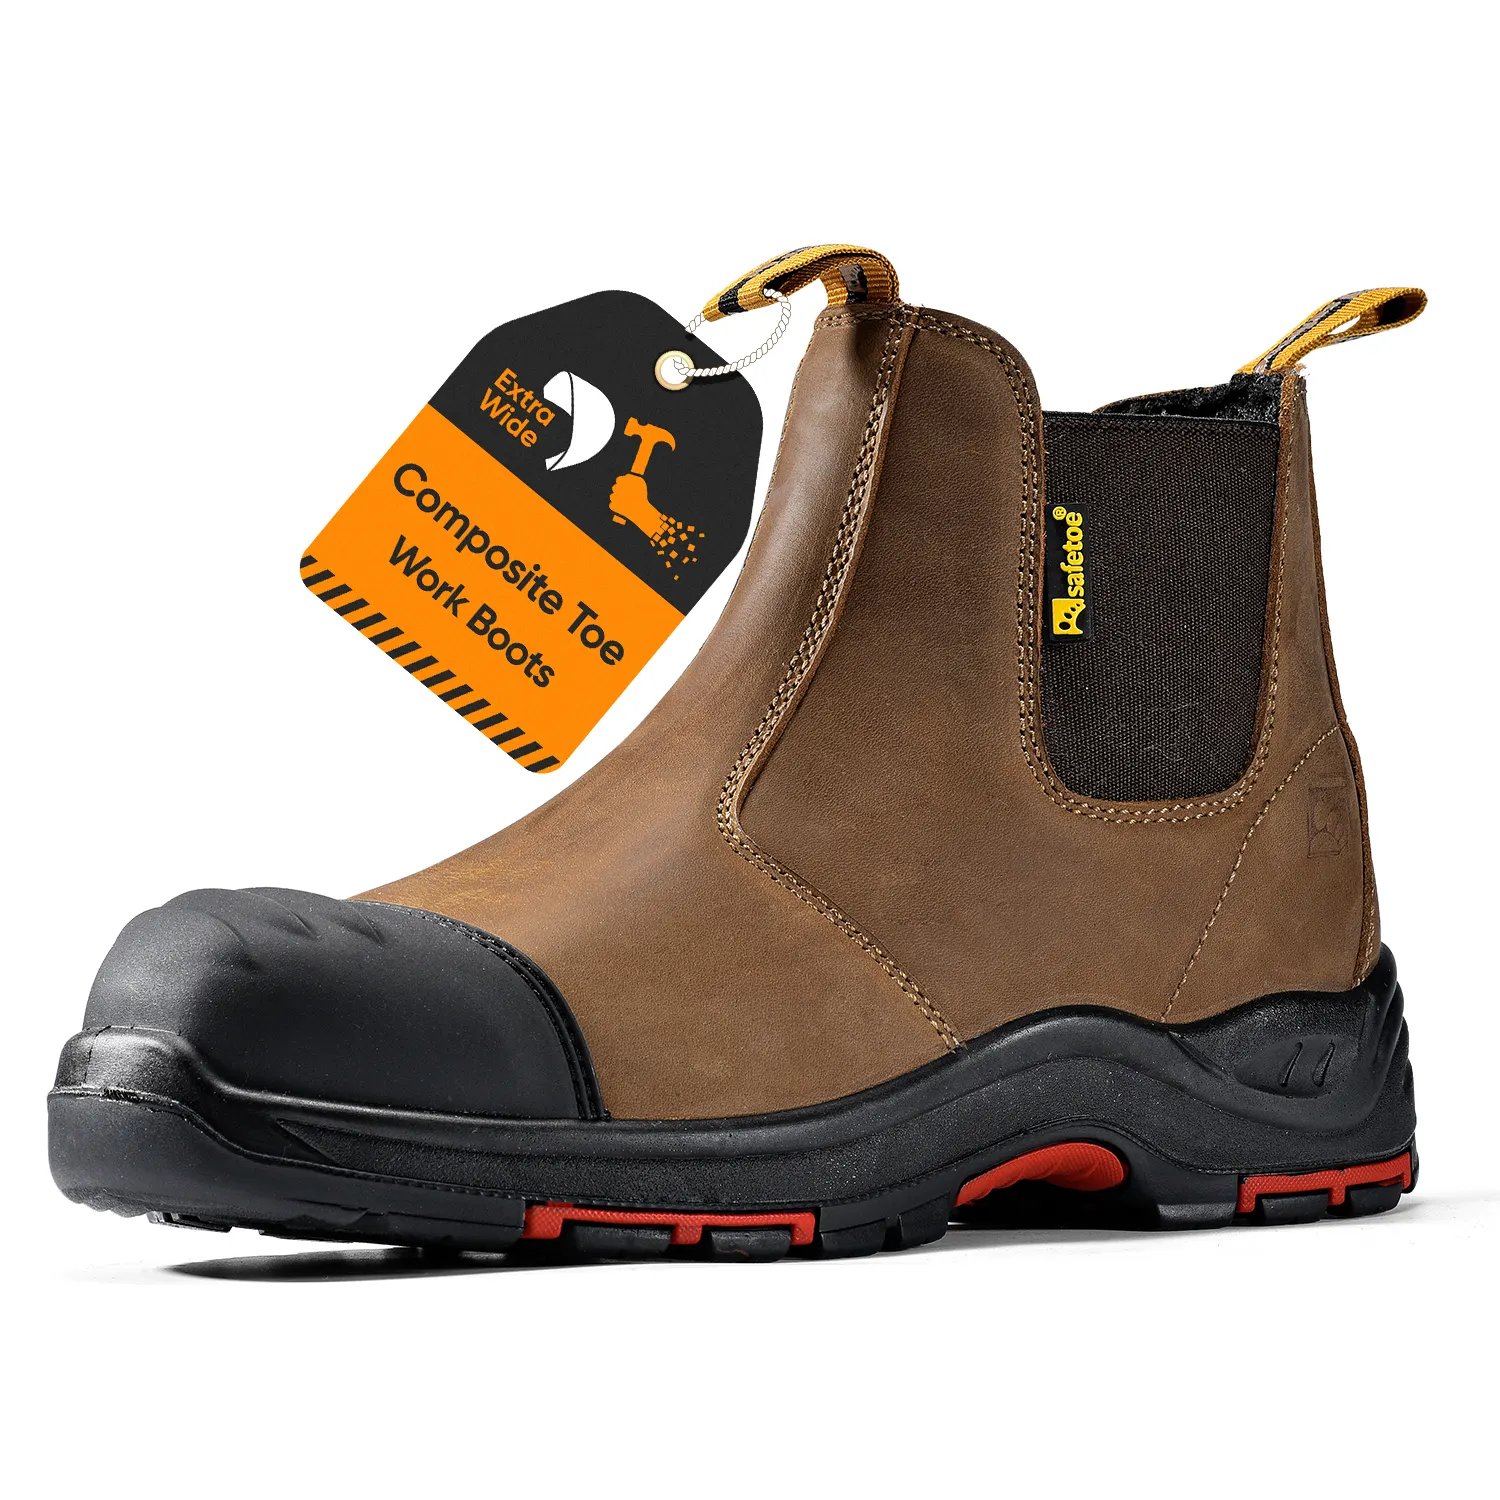 Safetoe S3 kompozit ayak güvenlik botu erkek ağır madencilik endüstriyel inşaat iş çizme ayakkabı